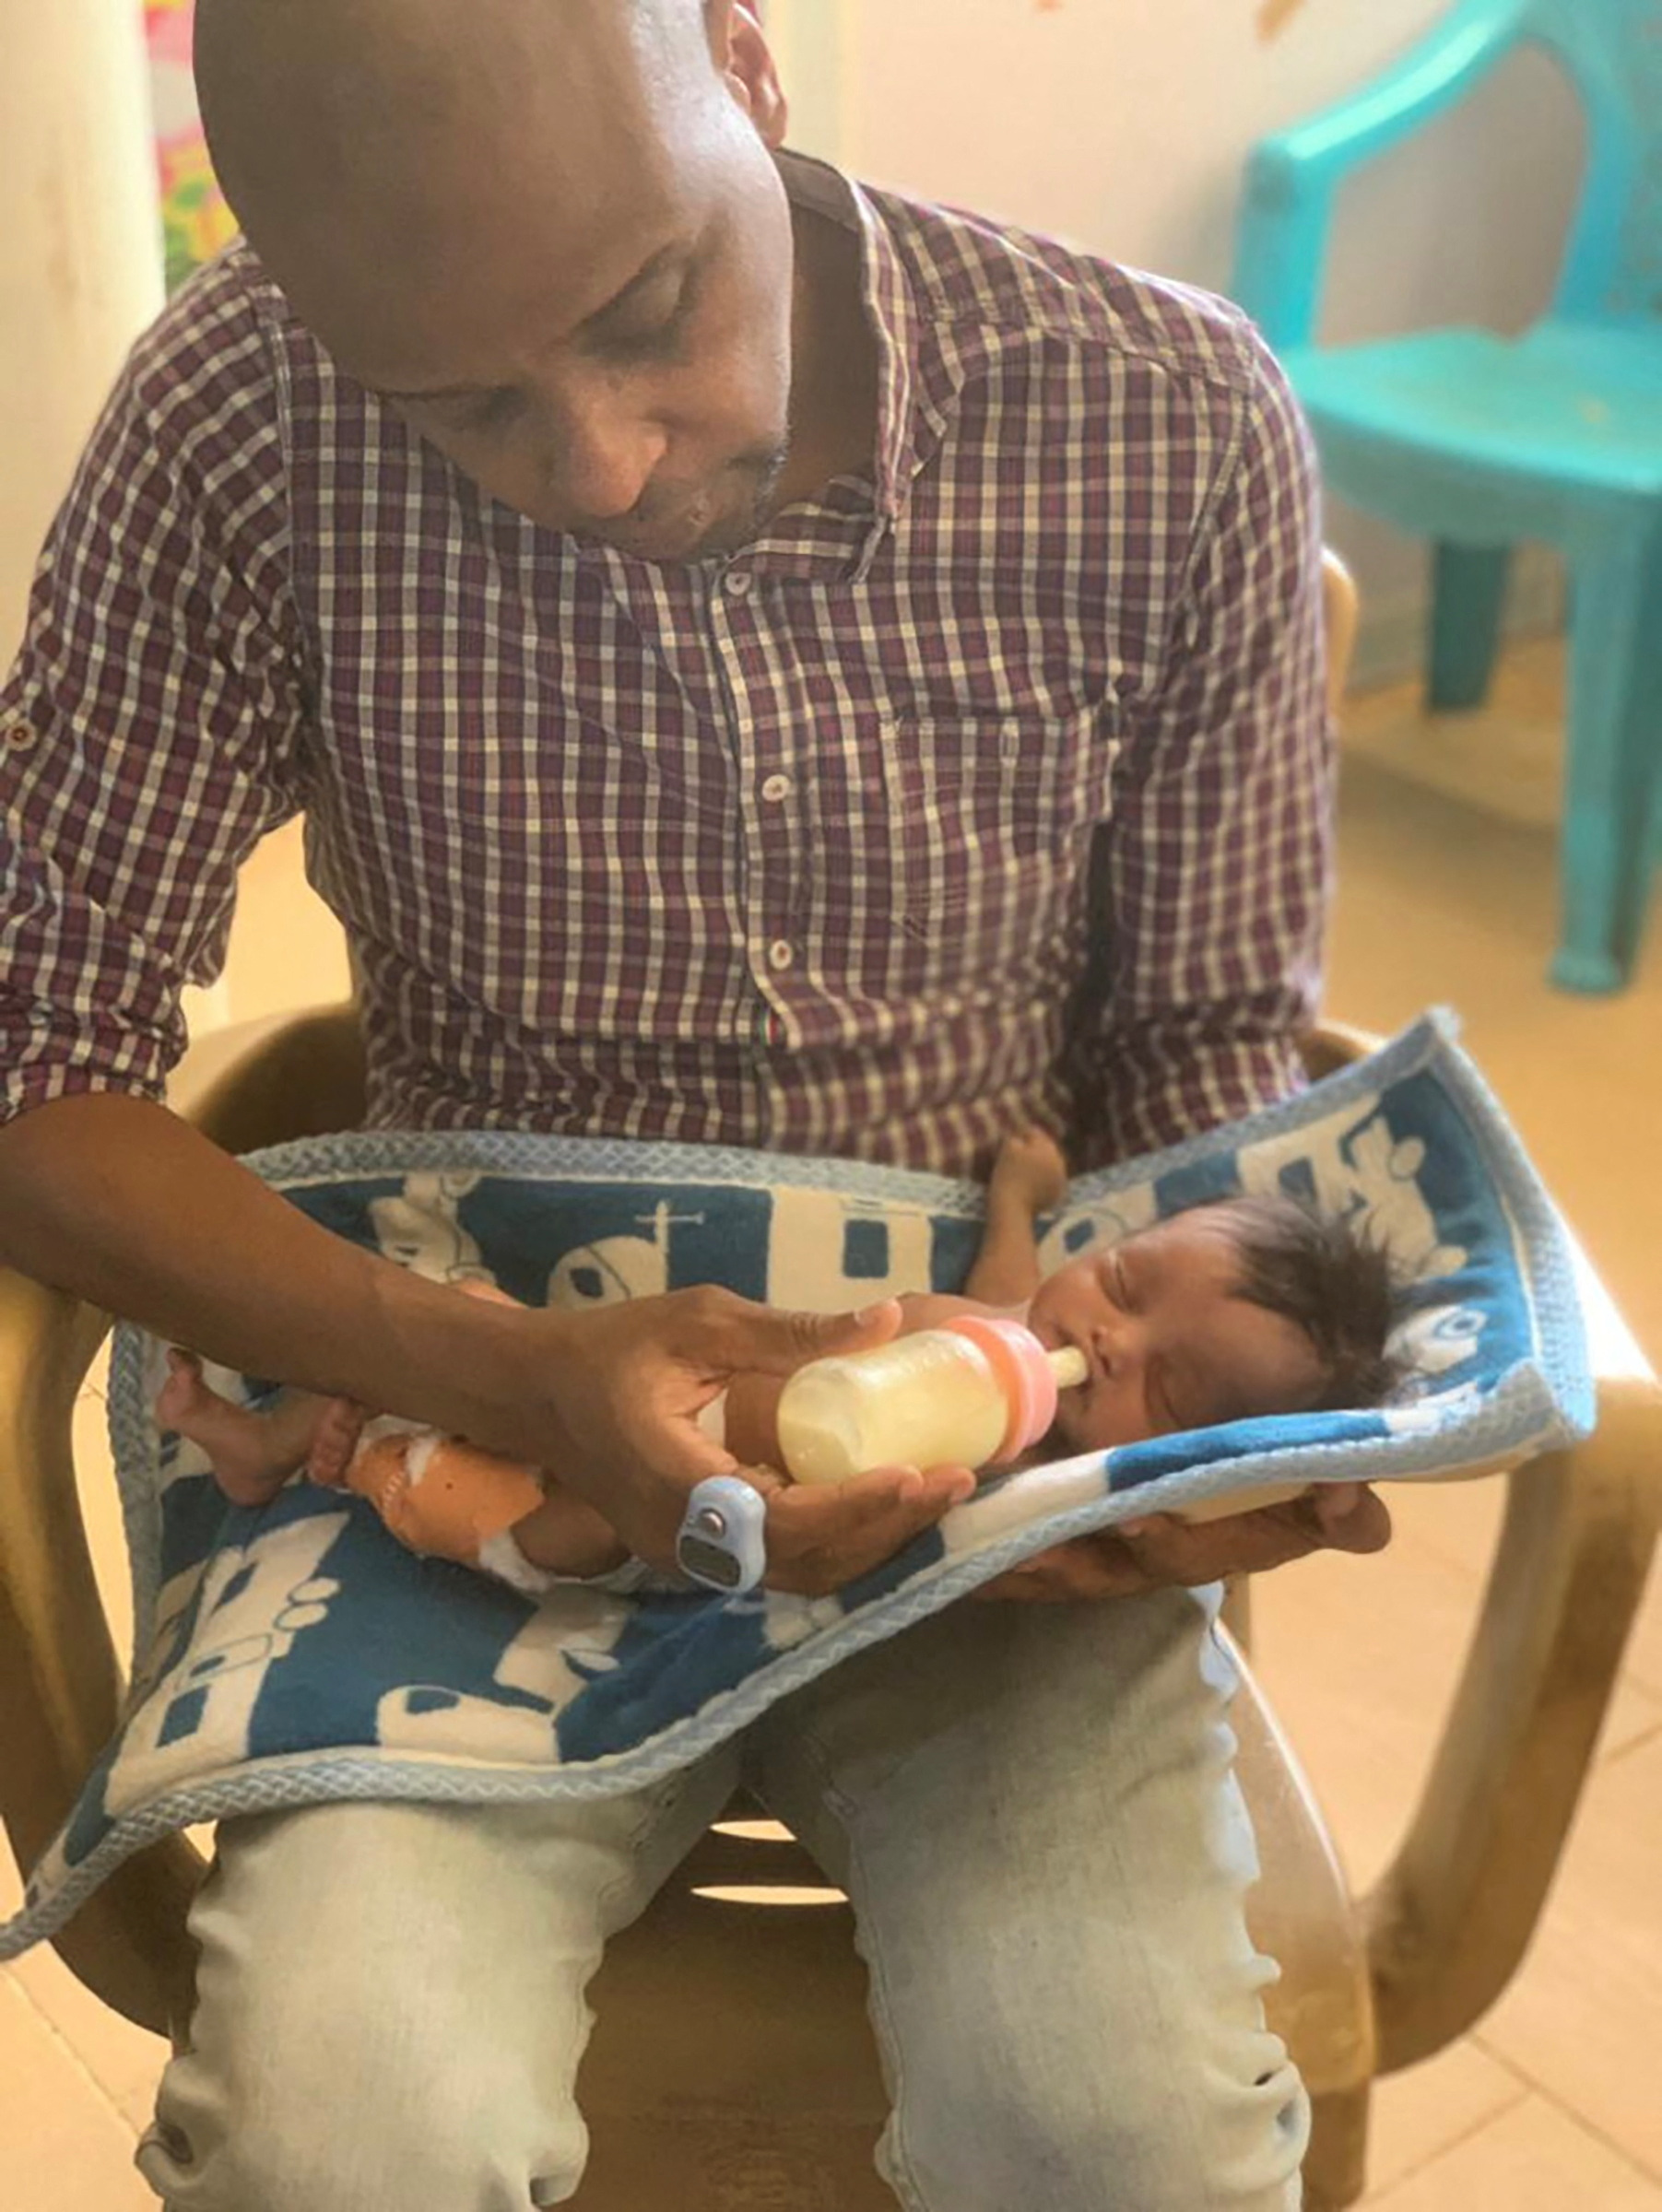 El Dr. Abdallah Kenany alimenta a un bebé recién nacido, que murió unos días después, en Jartum, Sudán (Sara Mohamed/Handout vía REUTERS)